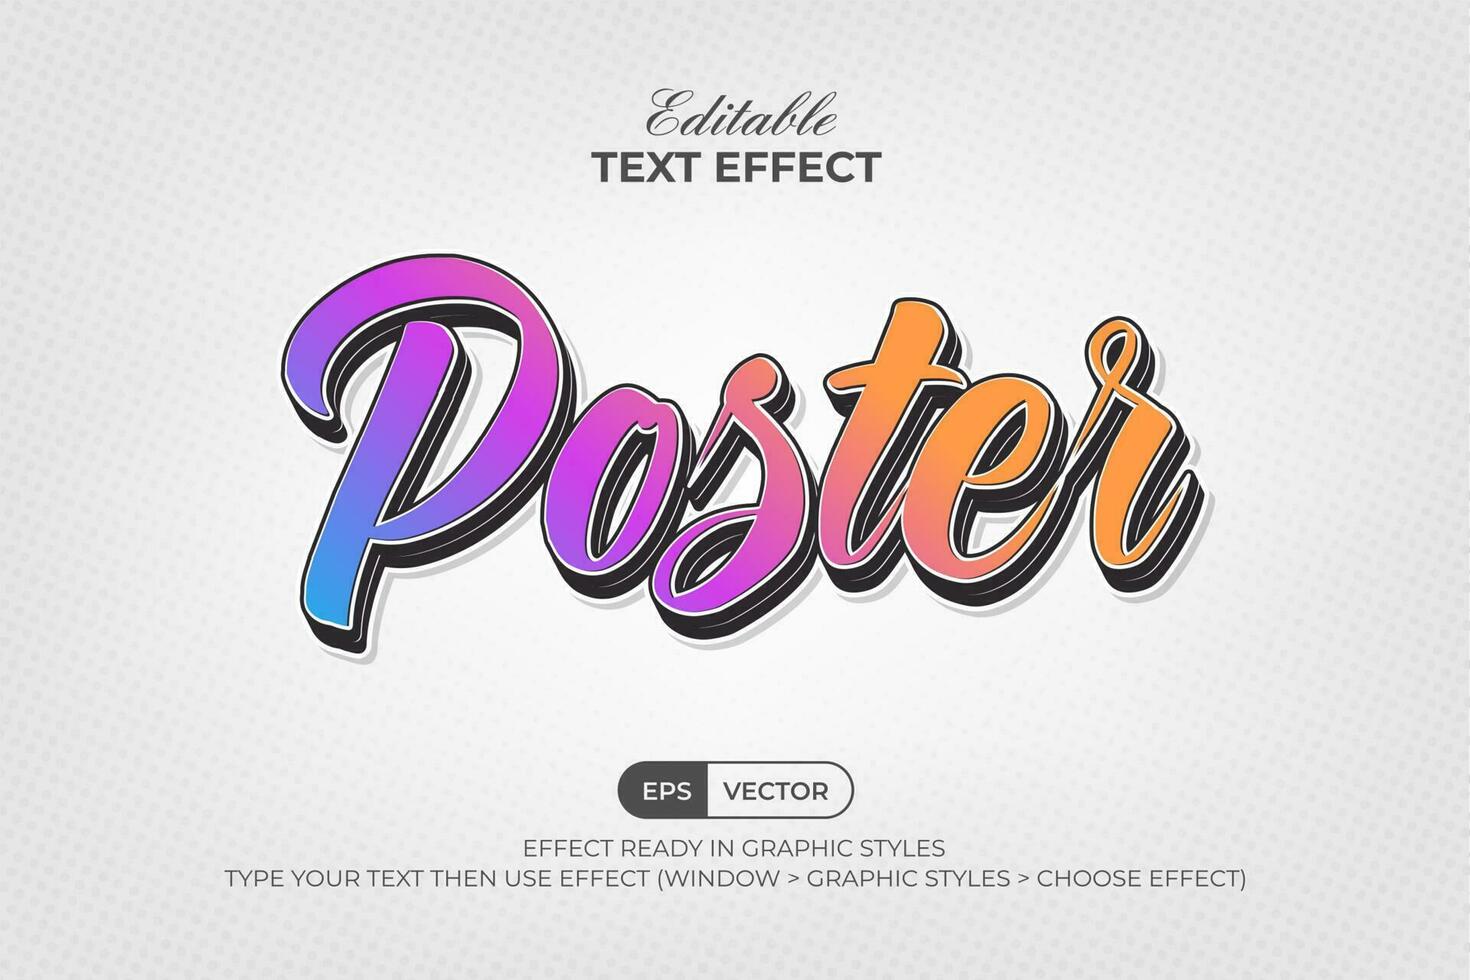 vistoso texto efecto póster estilo. editable texto efecto. vector